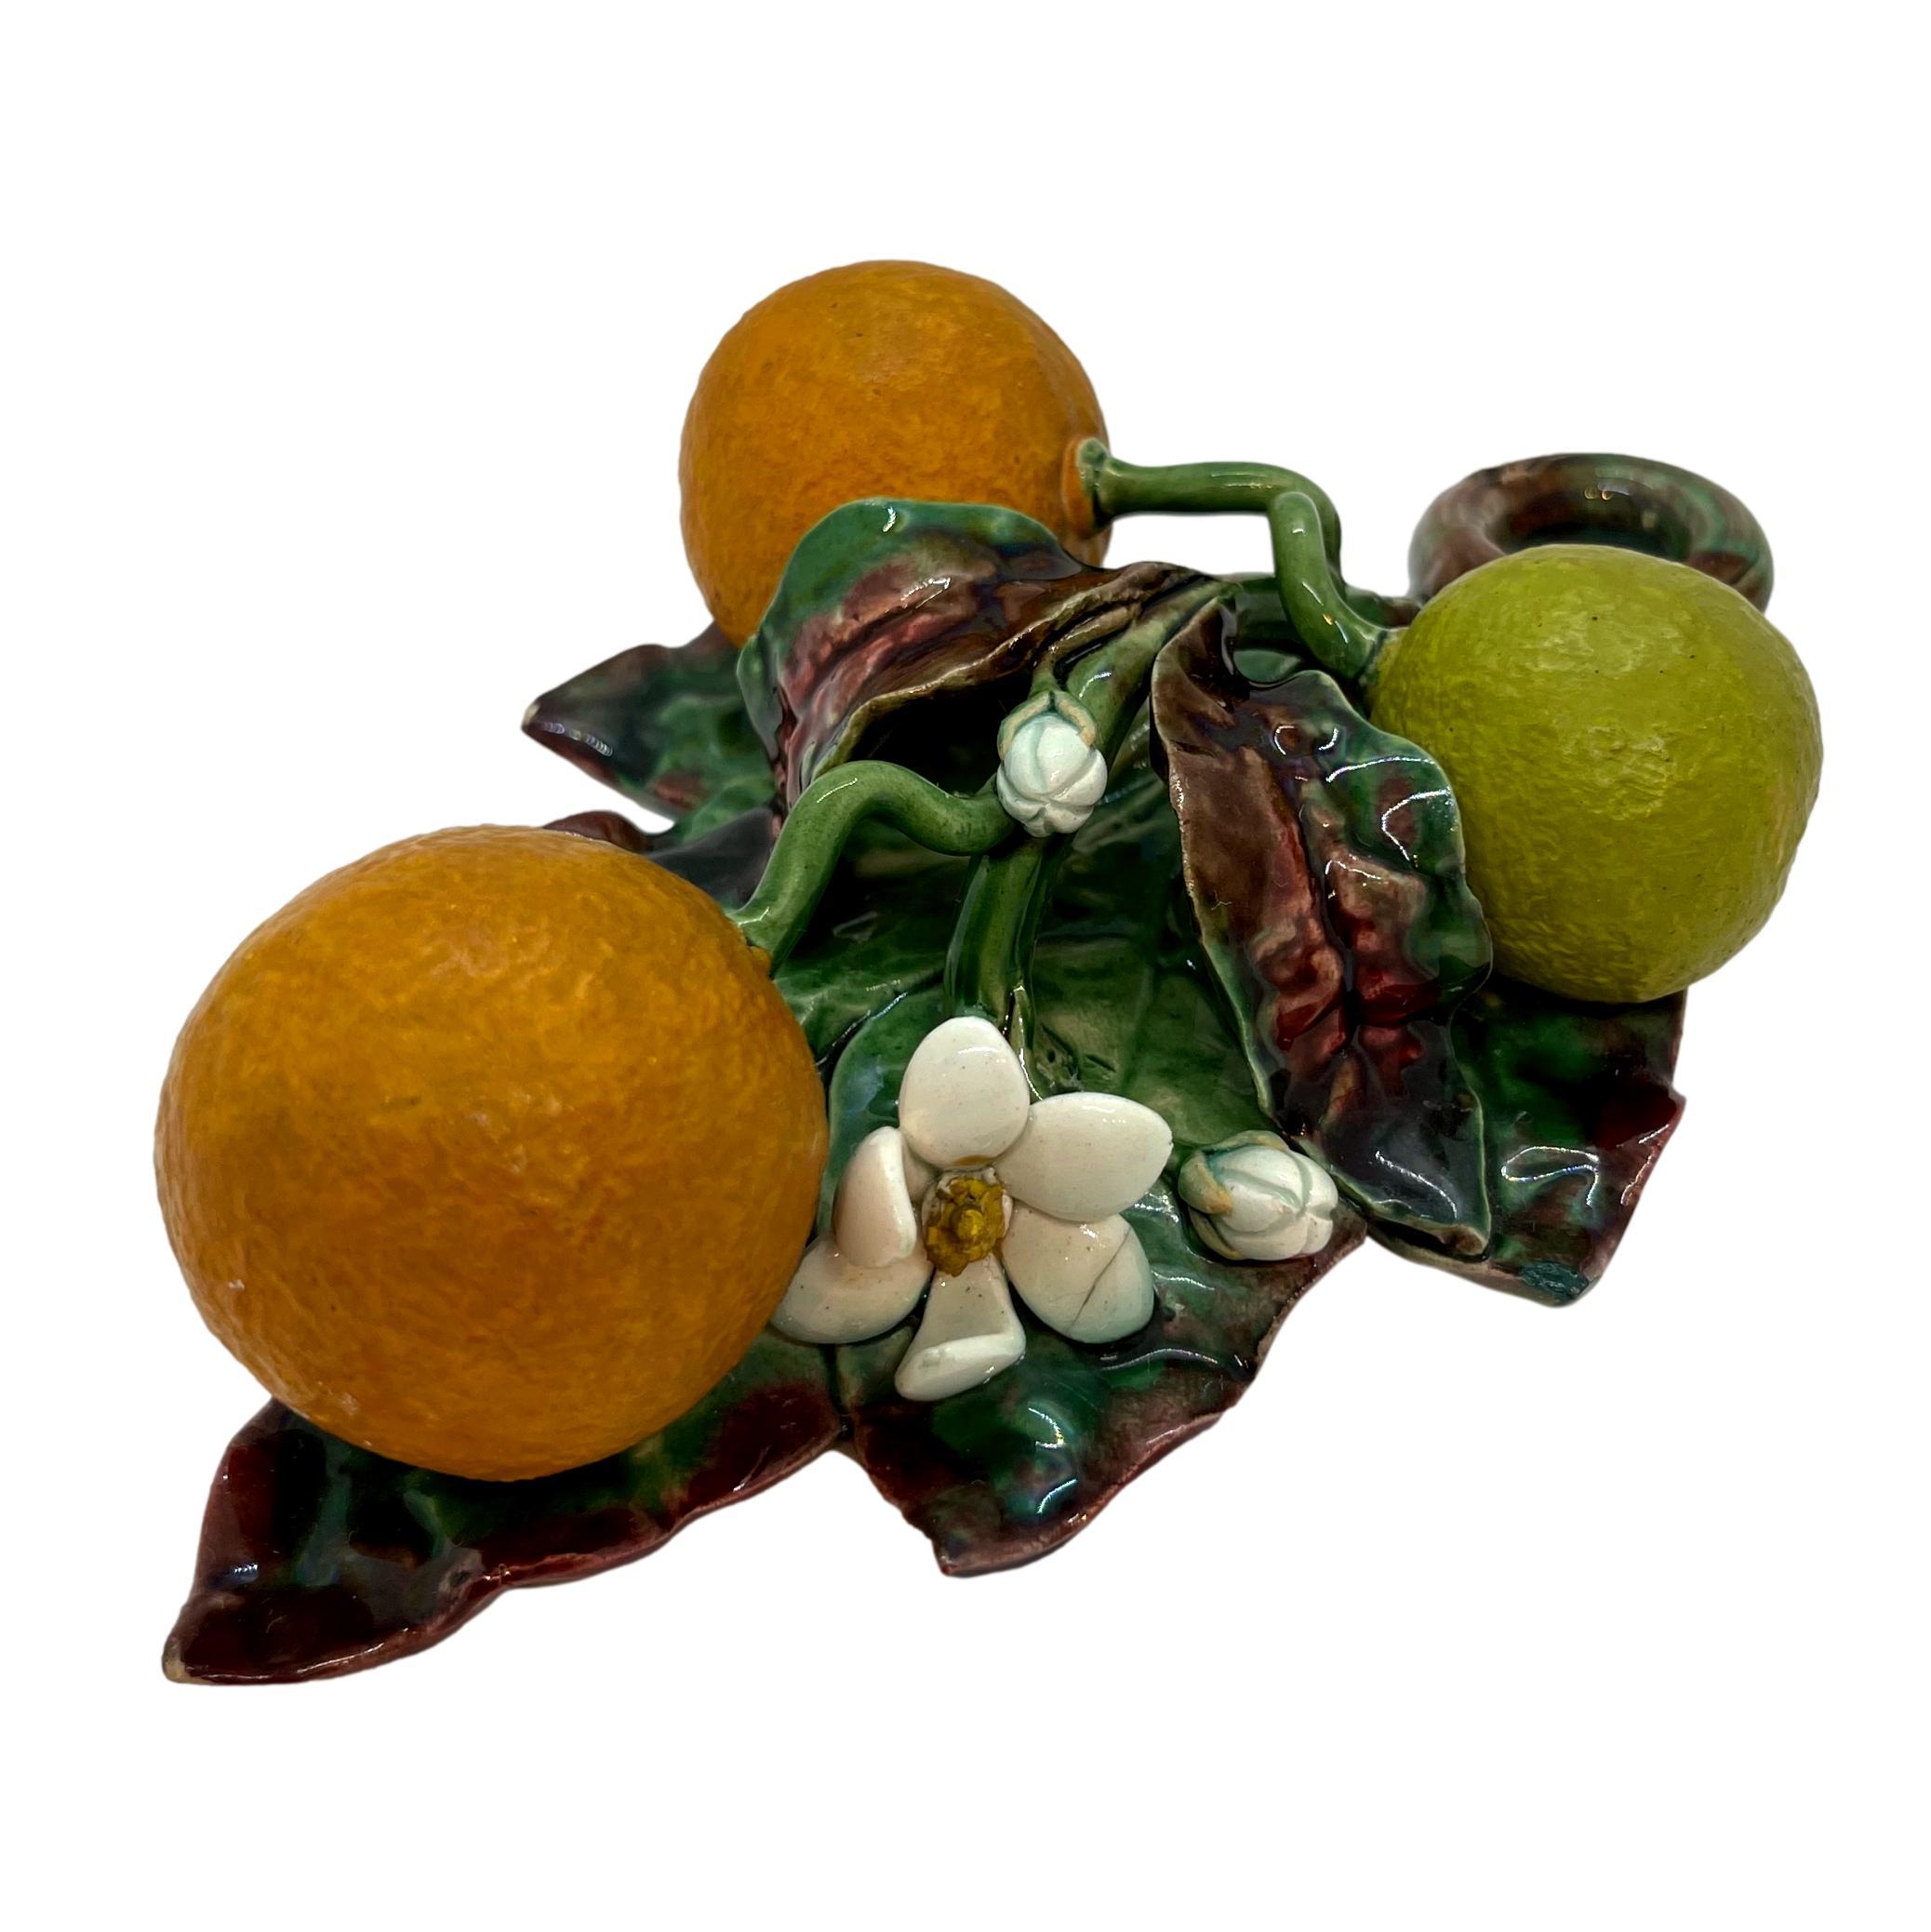 Menton Französisch Majolika (Barbotine) Trompe L'oeil Wandtafel mit Orangen in Hochrelief geformt, um 1880.
 
Diese seltenen Stücke aus Barbotine (französische Majolika), die allgemein als Menton